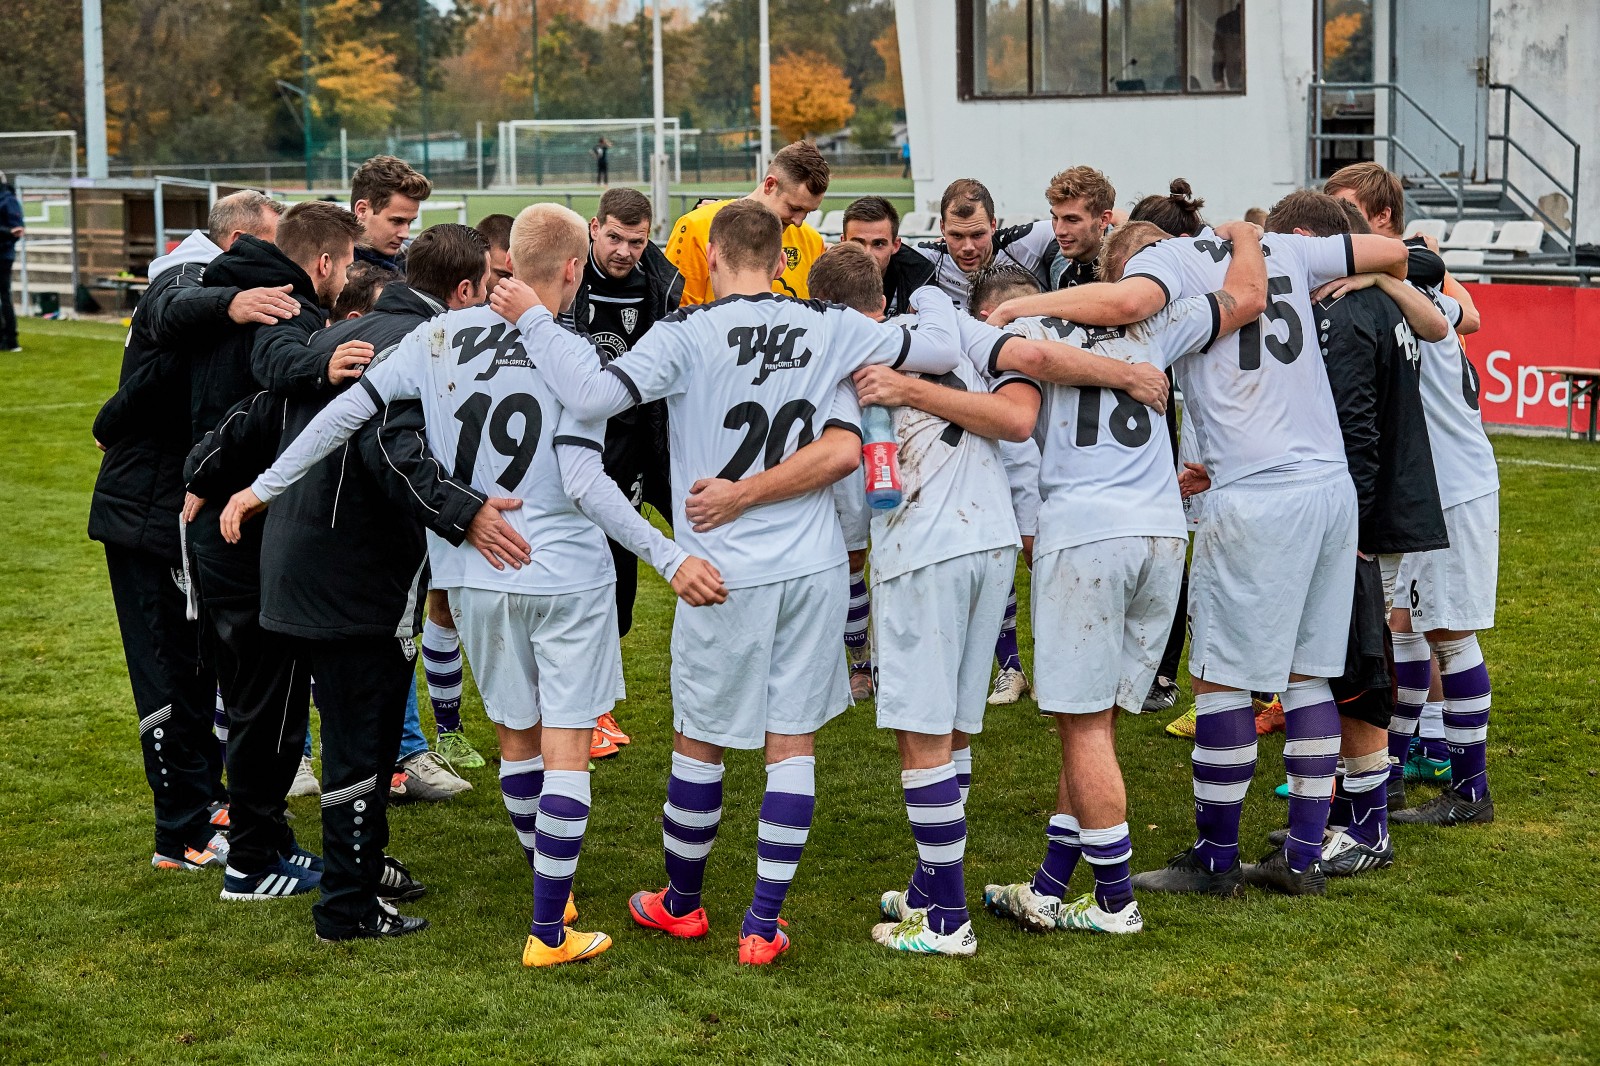 Ein Team, ein Ziel, drei Punkte: Dafür spielt der VfL Pirna-Copitz. Foto: Marko Förster